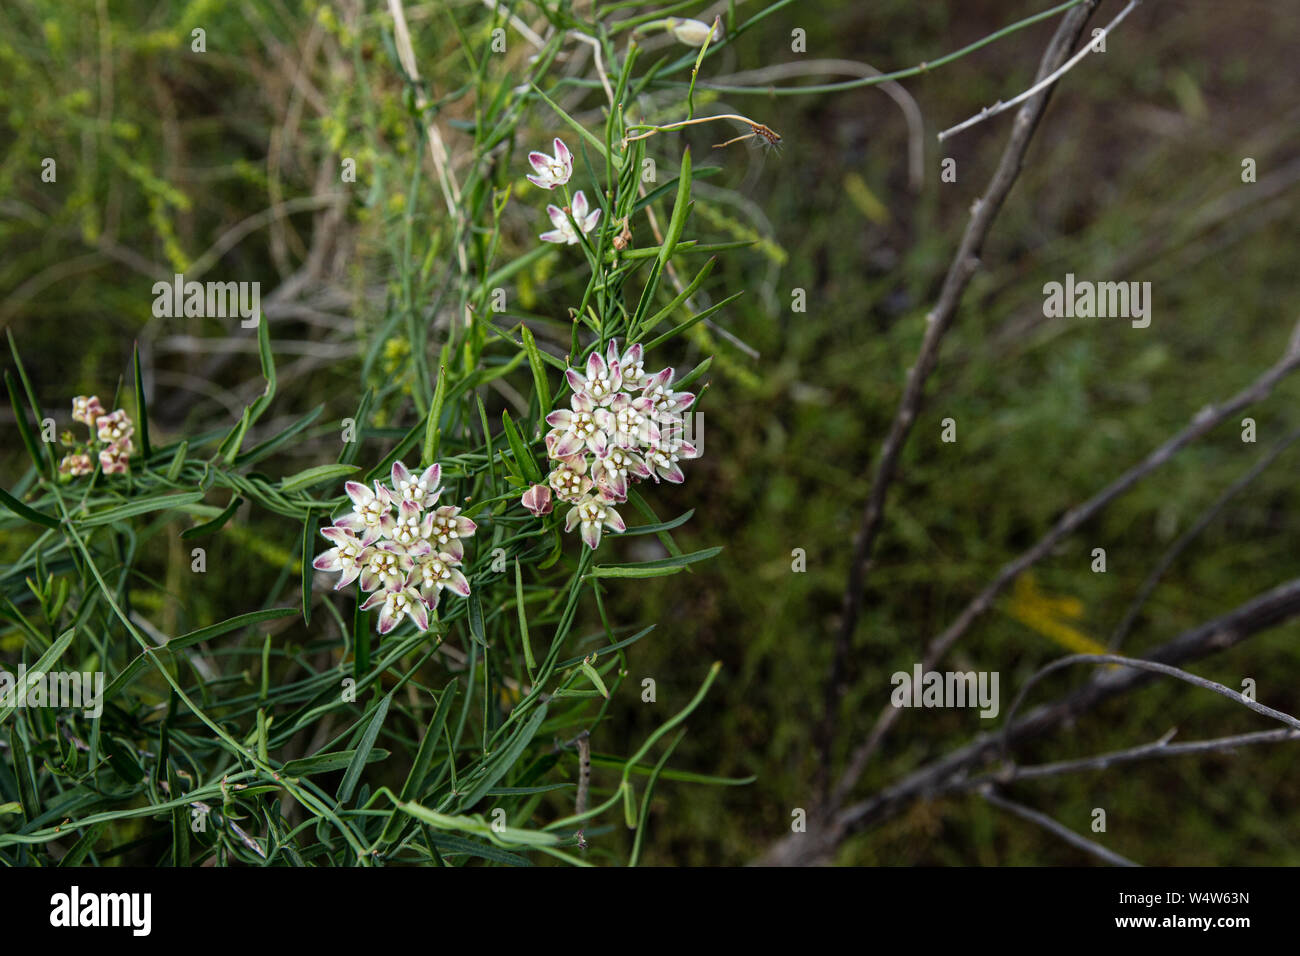 Texanische Einheimische Pflanze Stockfotos und -bilder Kaufen - Alamy